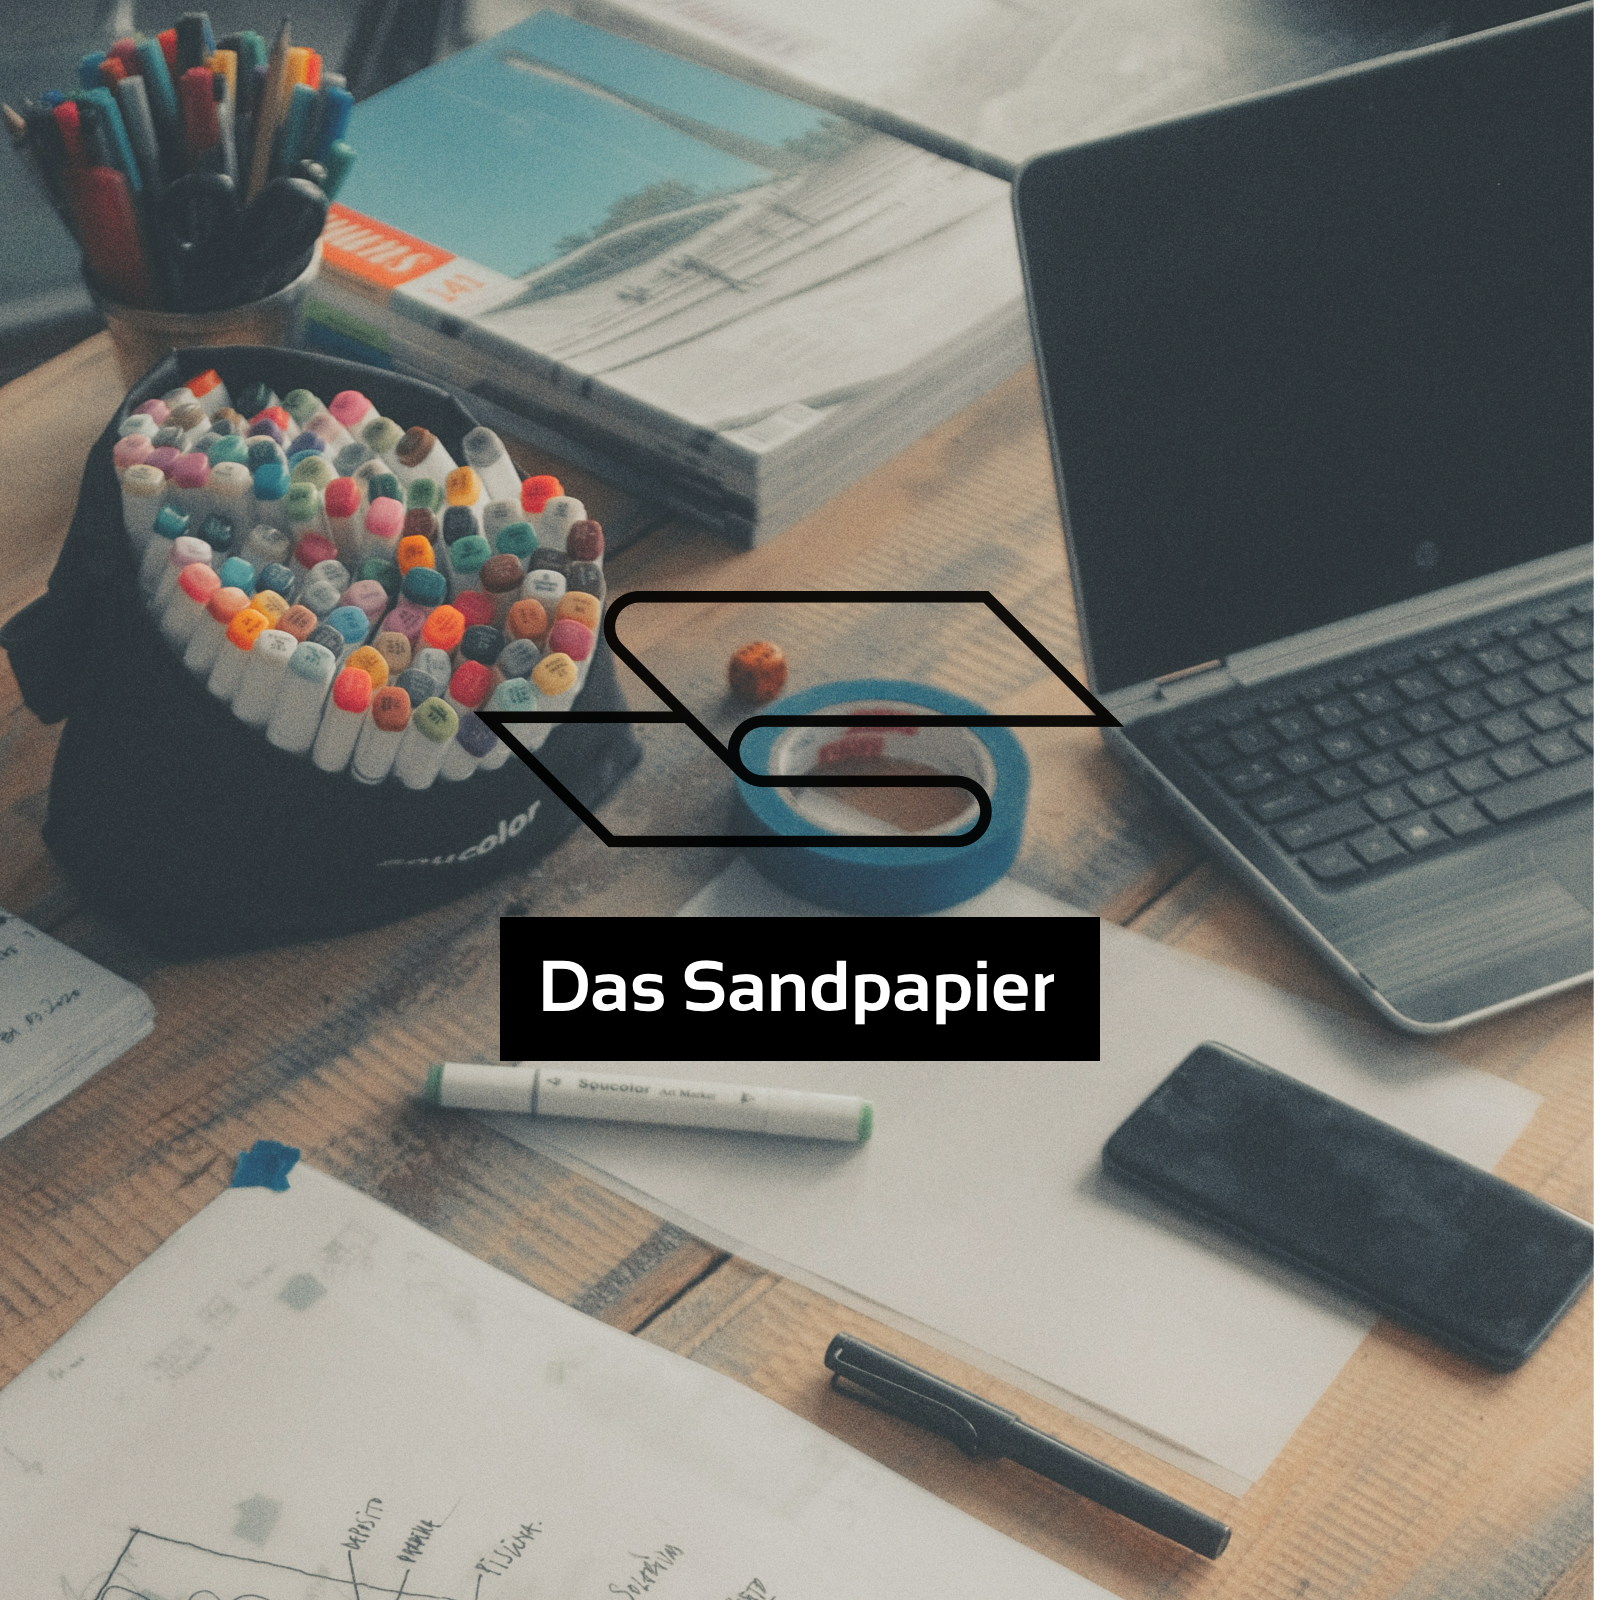 Ein Schreibtisch mit Laptop, Papier und bunten Stiften unter dem Podcast Logo "Das Sandpapier"